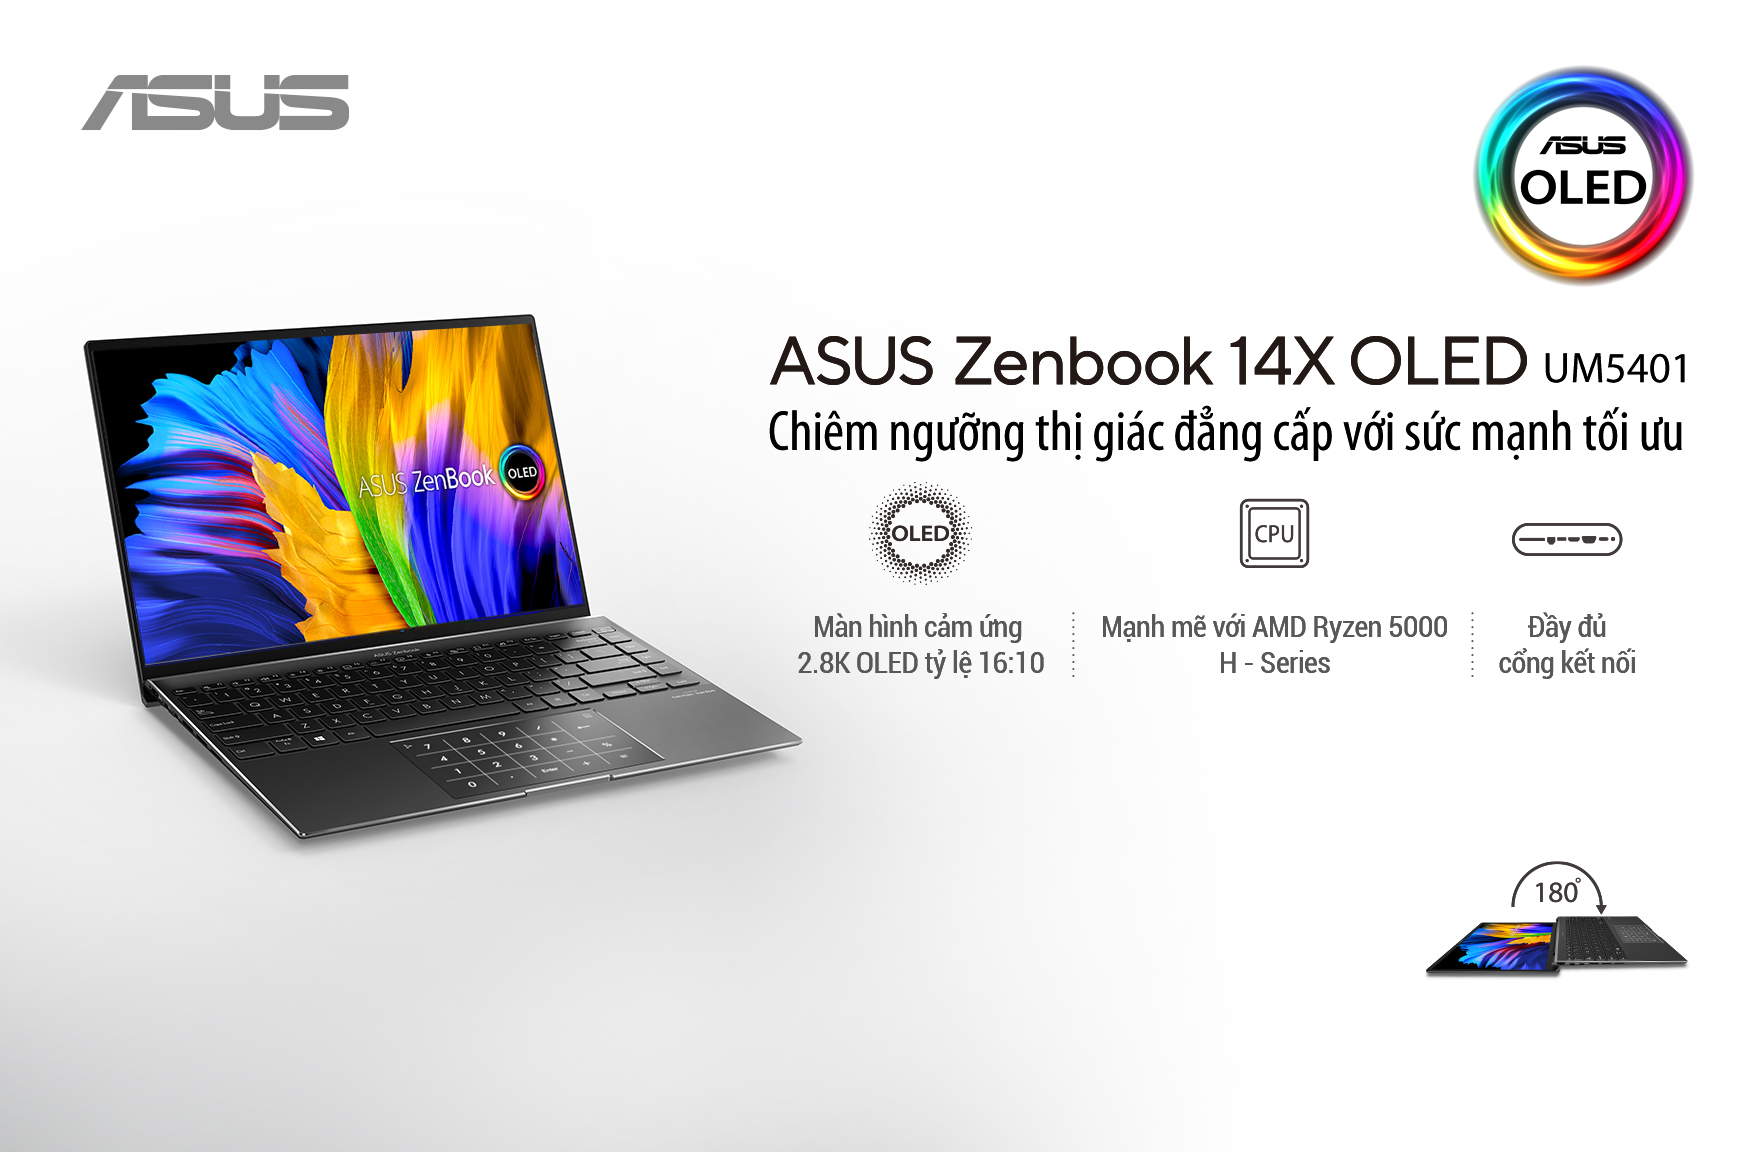 ASUS giới thiệu ZenBook 14X OLED mới: Màn hình 16:10 OLED chuẩn Pantone, AMD Ryzen 5000 H-Series,...